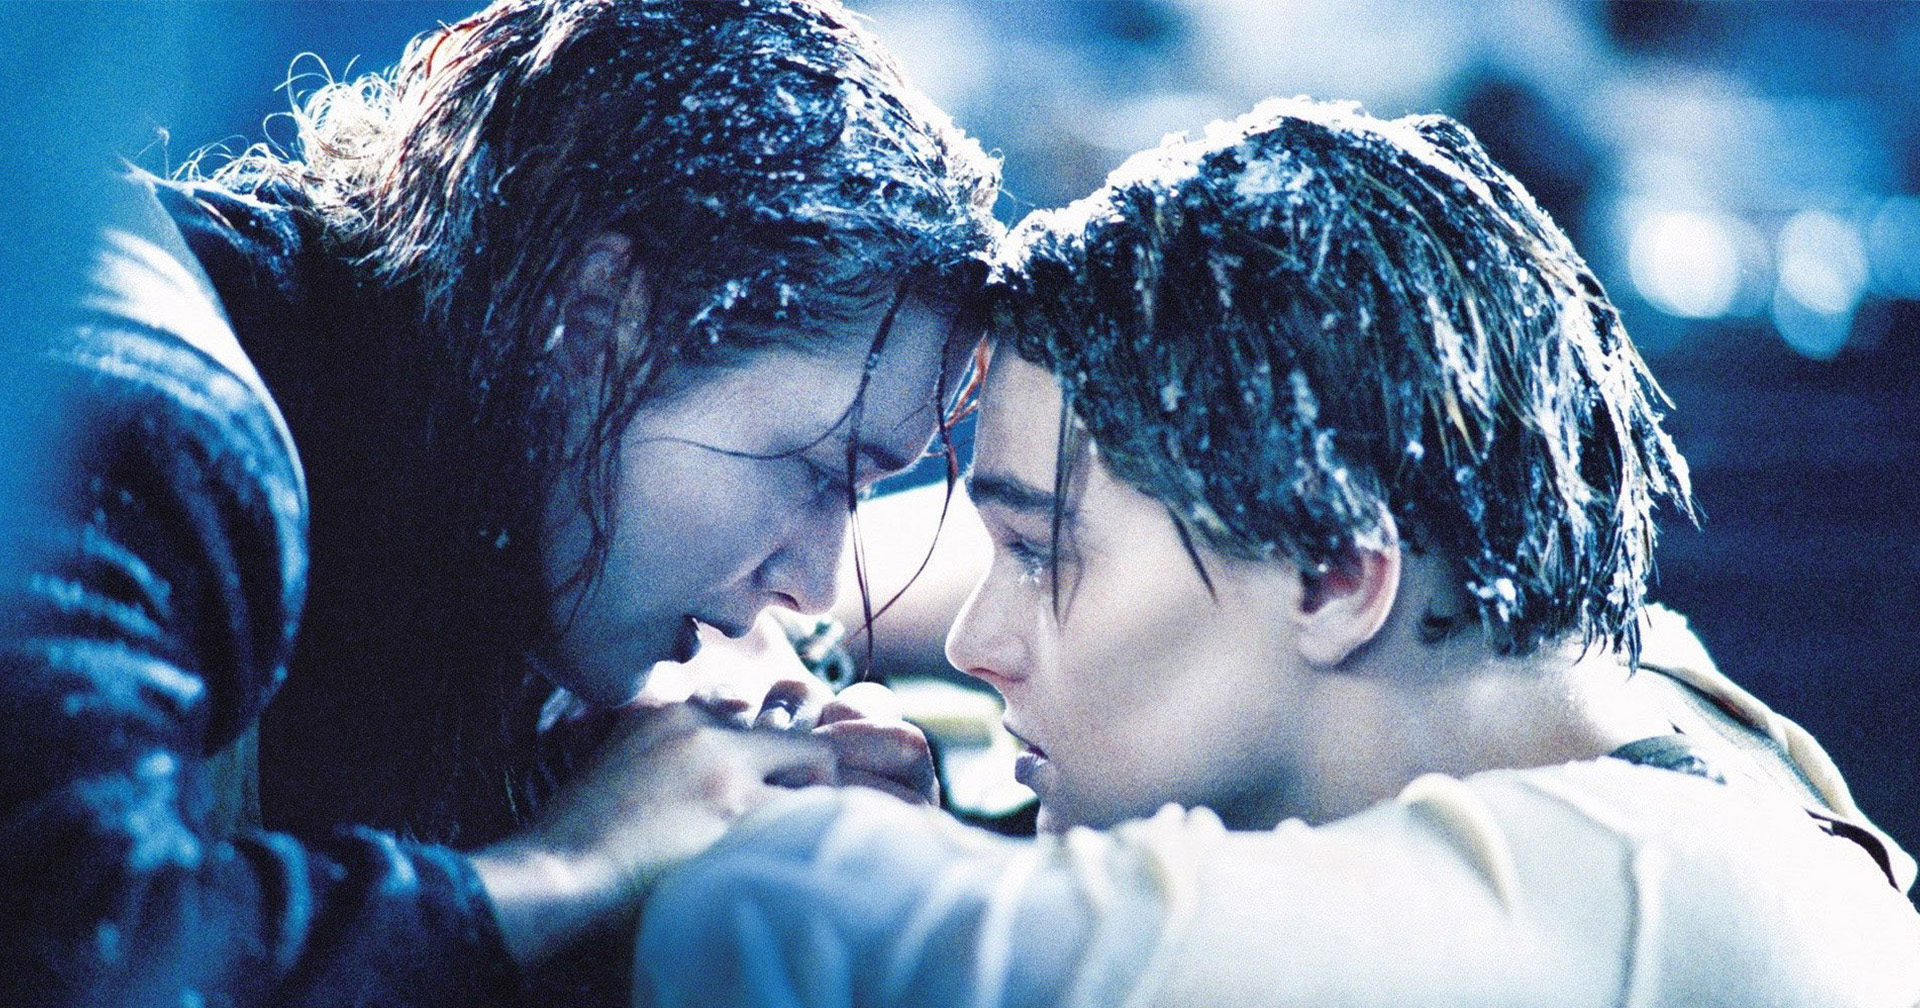 James Cameron ทำวิจัยหักล้างทฤษฏีที่ Jack Dawson รอดใน Titanic เพราะสุดท้ายแจ็กก็ต้องตายอยู่ดี